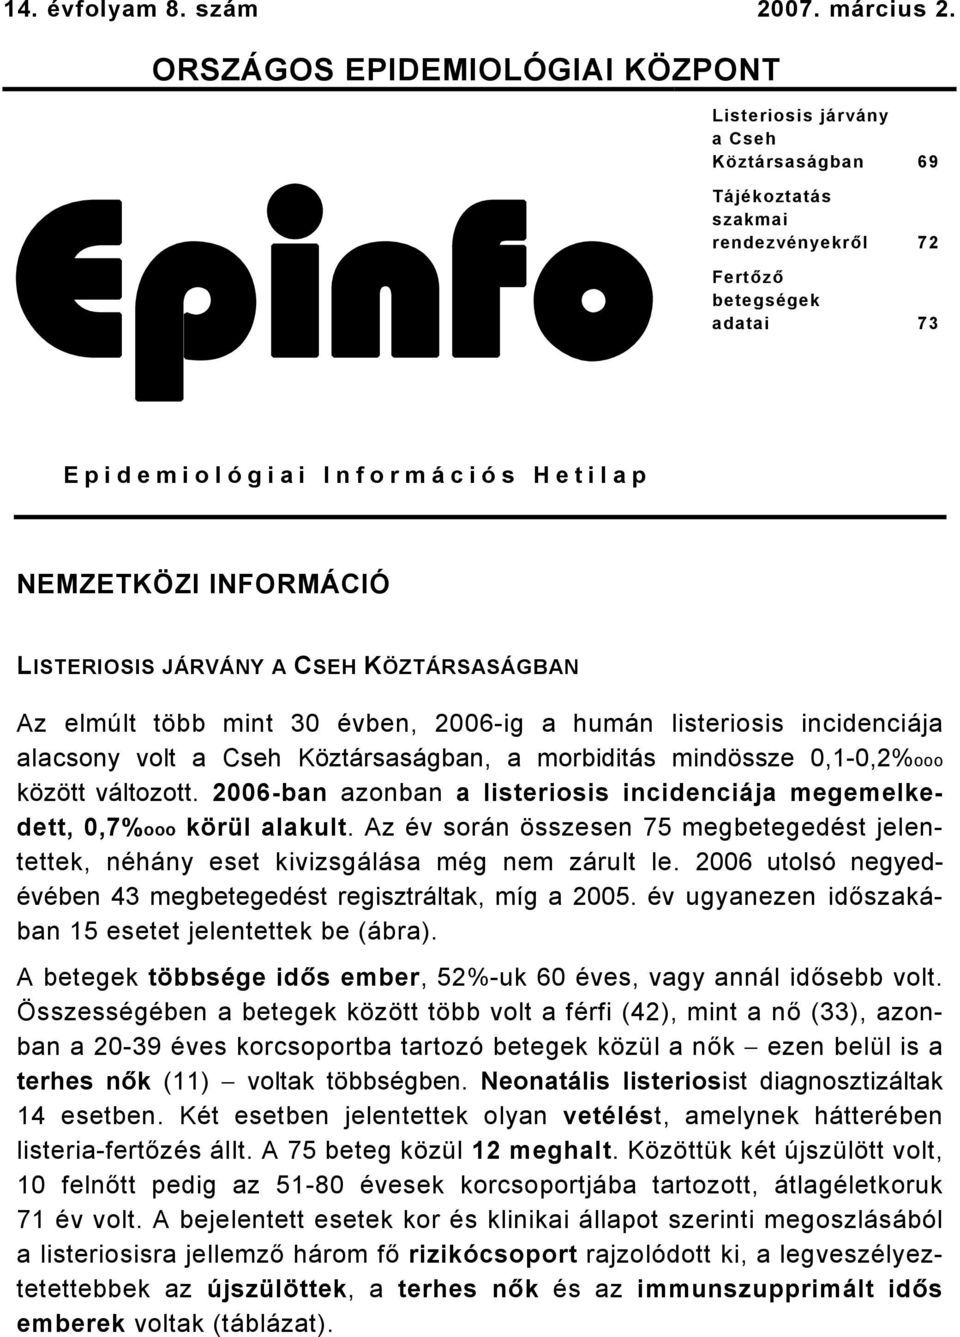 INFORMÁCIÓ LISTERIOSIS JÁRVÁNY A CSEH KÖZTÁRSASÁGBAN Az elmúlt több mint 30 évben, 2006-ig a humán listeriosis incidenciája alacsony volt a Cseh Köztársaságban, a morbiditás mindössze 0,1-0,2%ooo